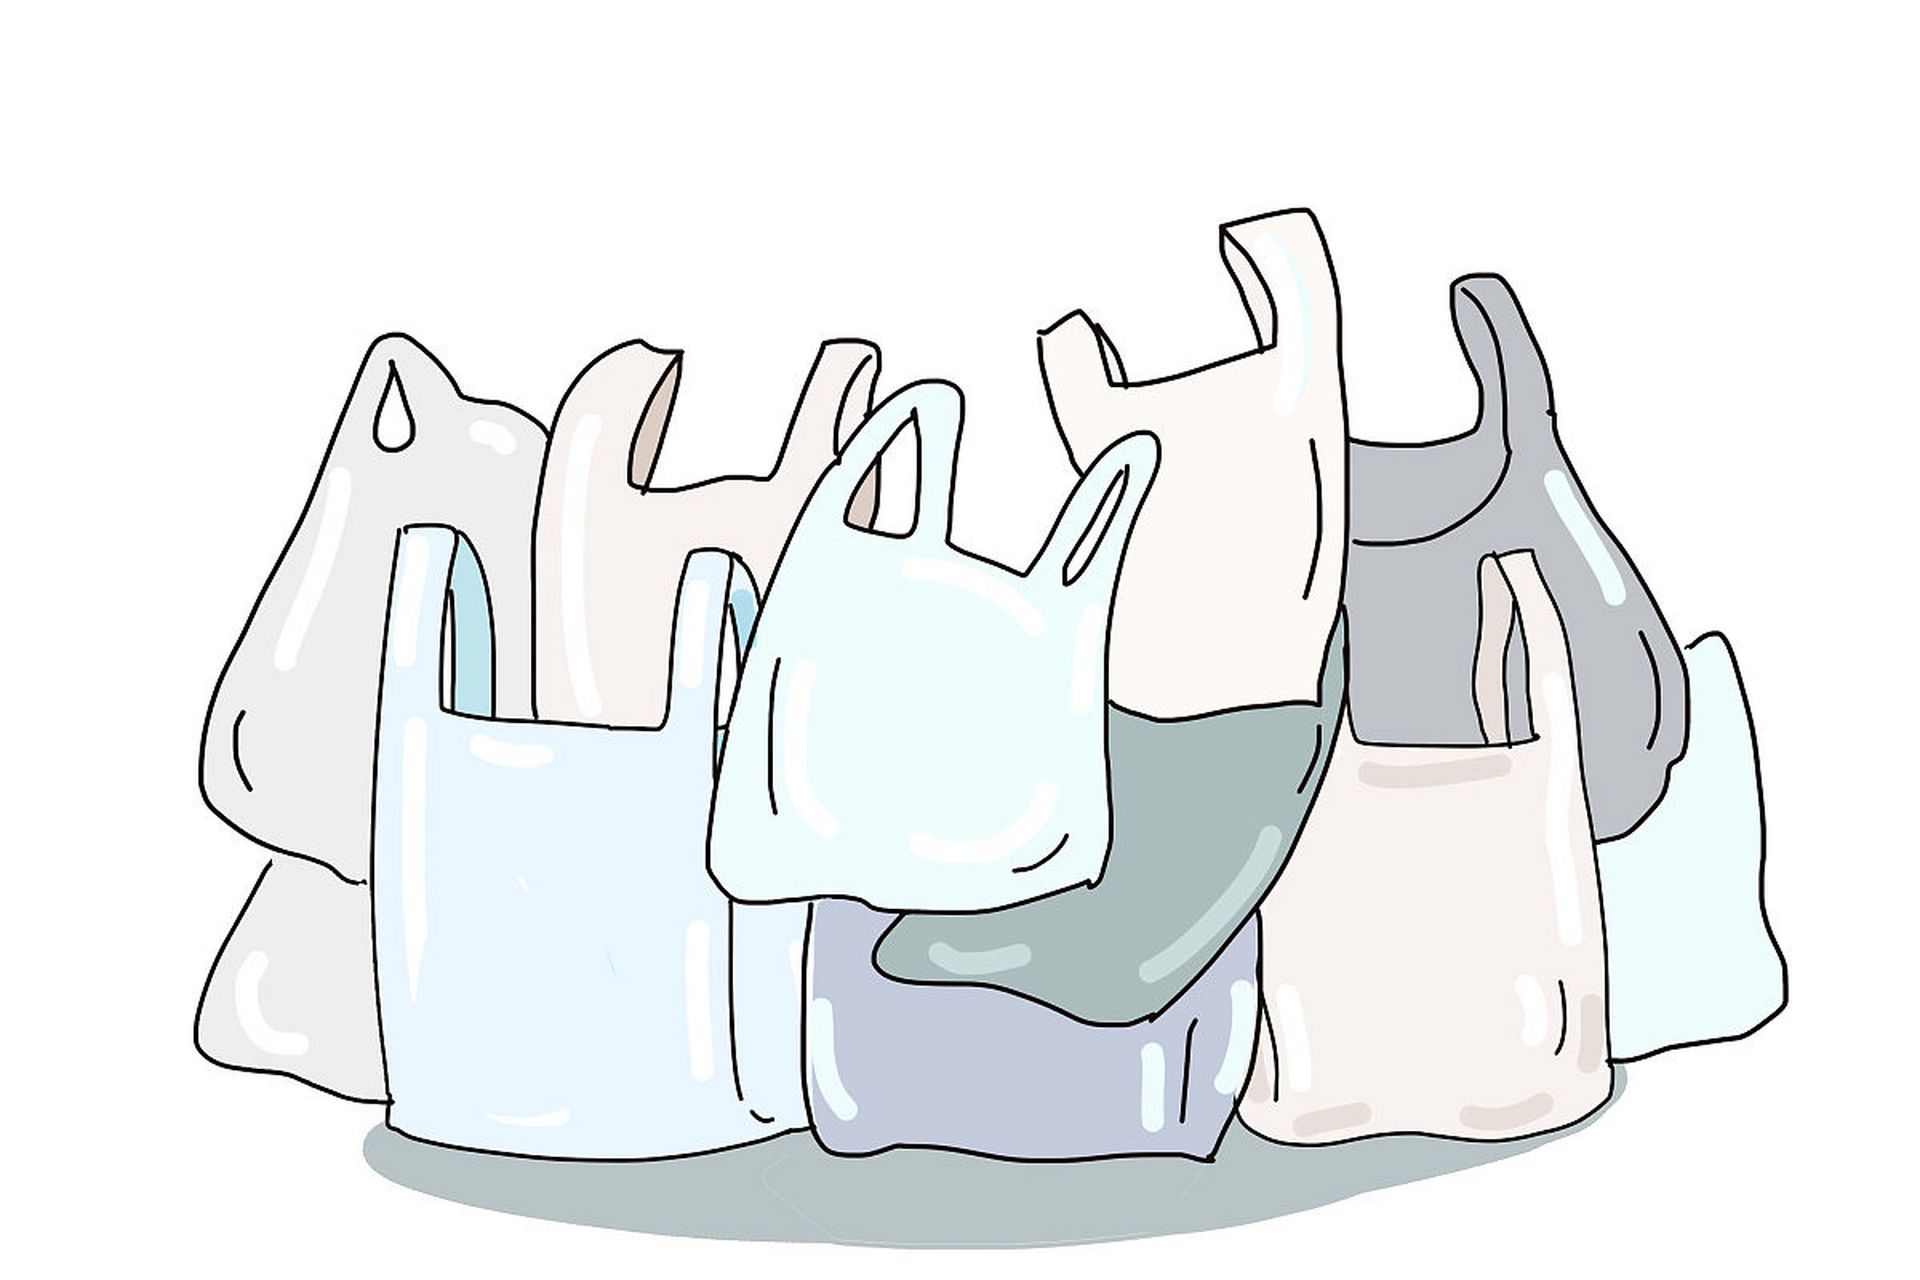 塑料袋收费政策:环保还是负担 2008年,政府推出了一项环保政策,要求